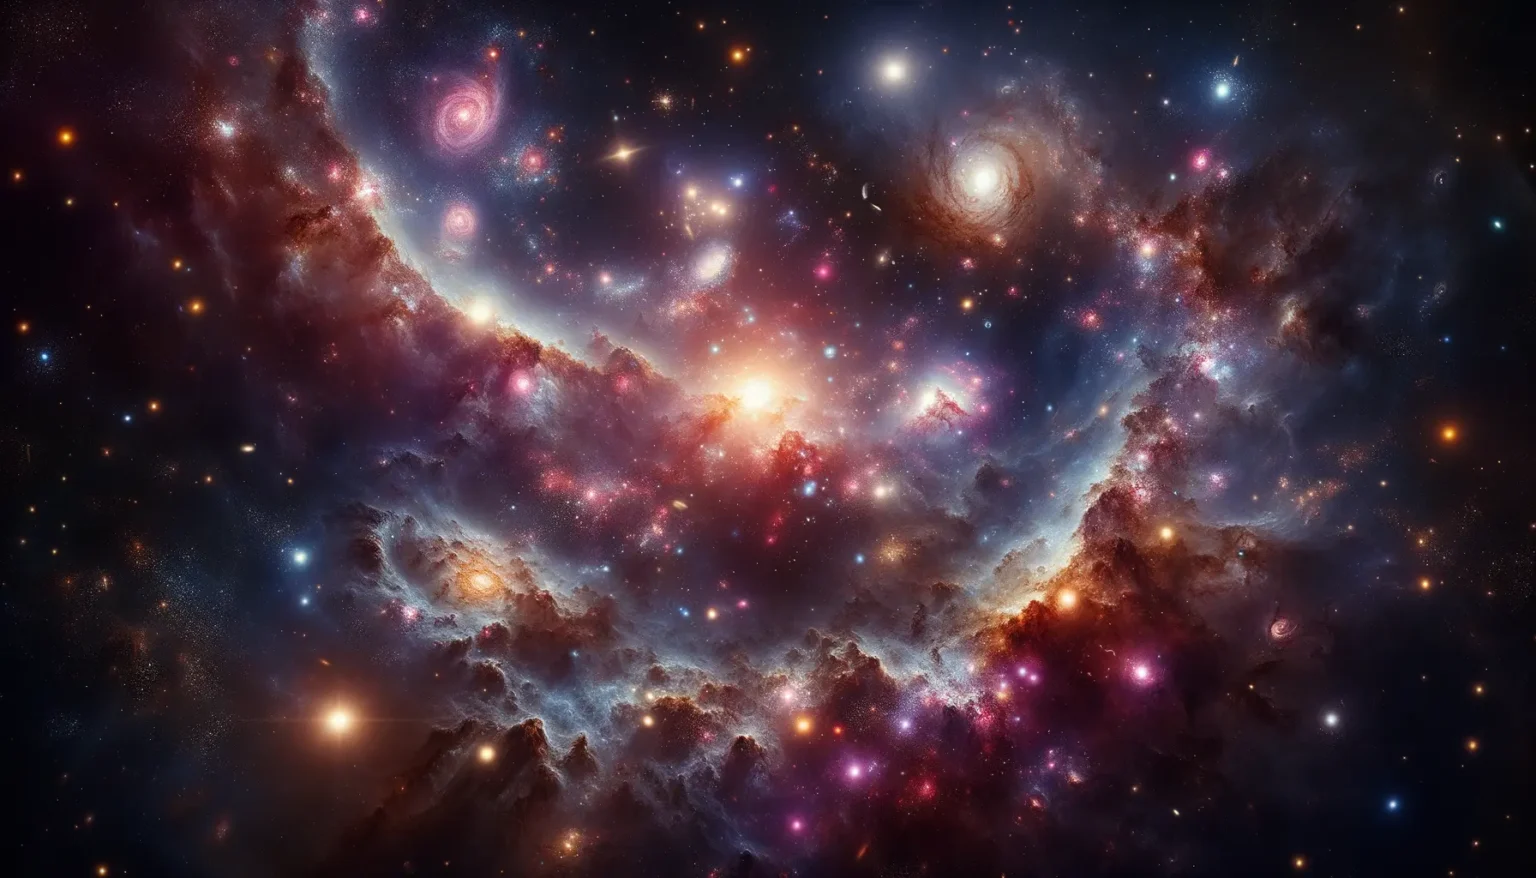 Eine lebendige Darstellung des Kosmos mit mehreren Galaxien, leuchtenden Sternen und farbenfrohen Nebelflecken. Helle Bereiche sind mit dunkleren Staubwolken kontrastiert und erzeugen ein tiefes, dreidimensionales Bild des Universums.